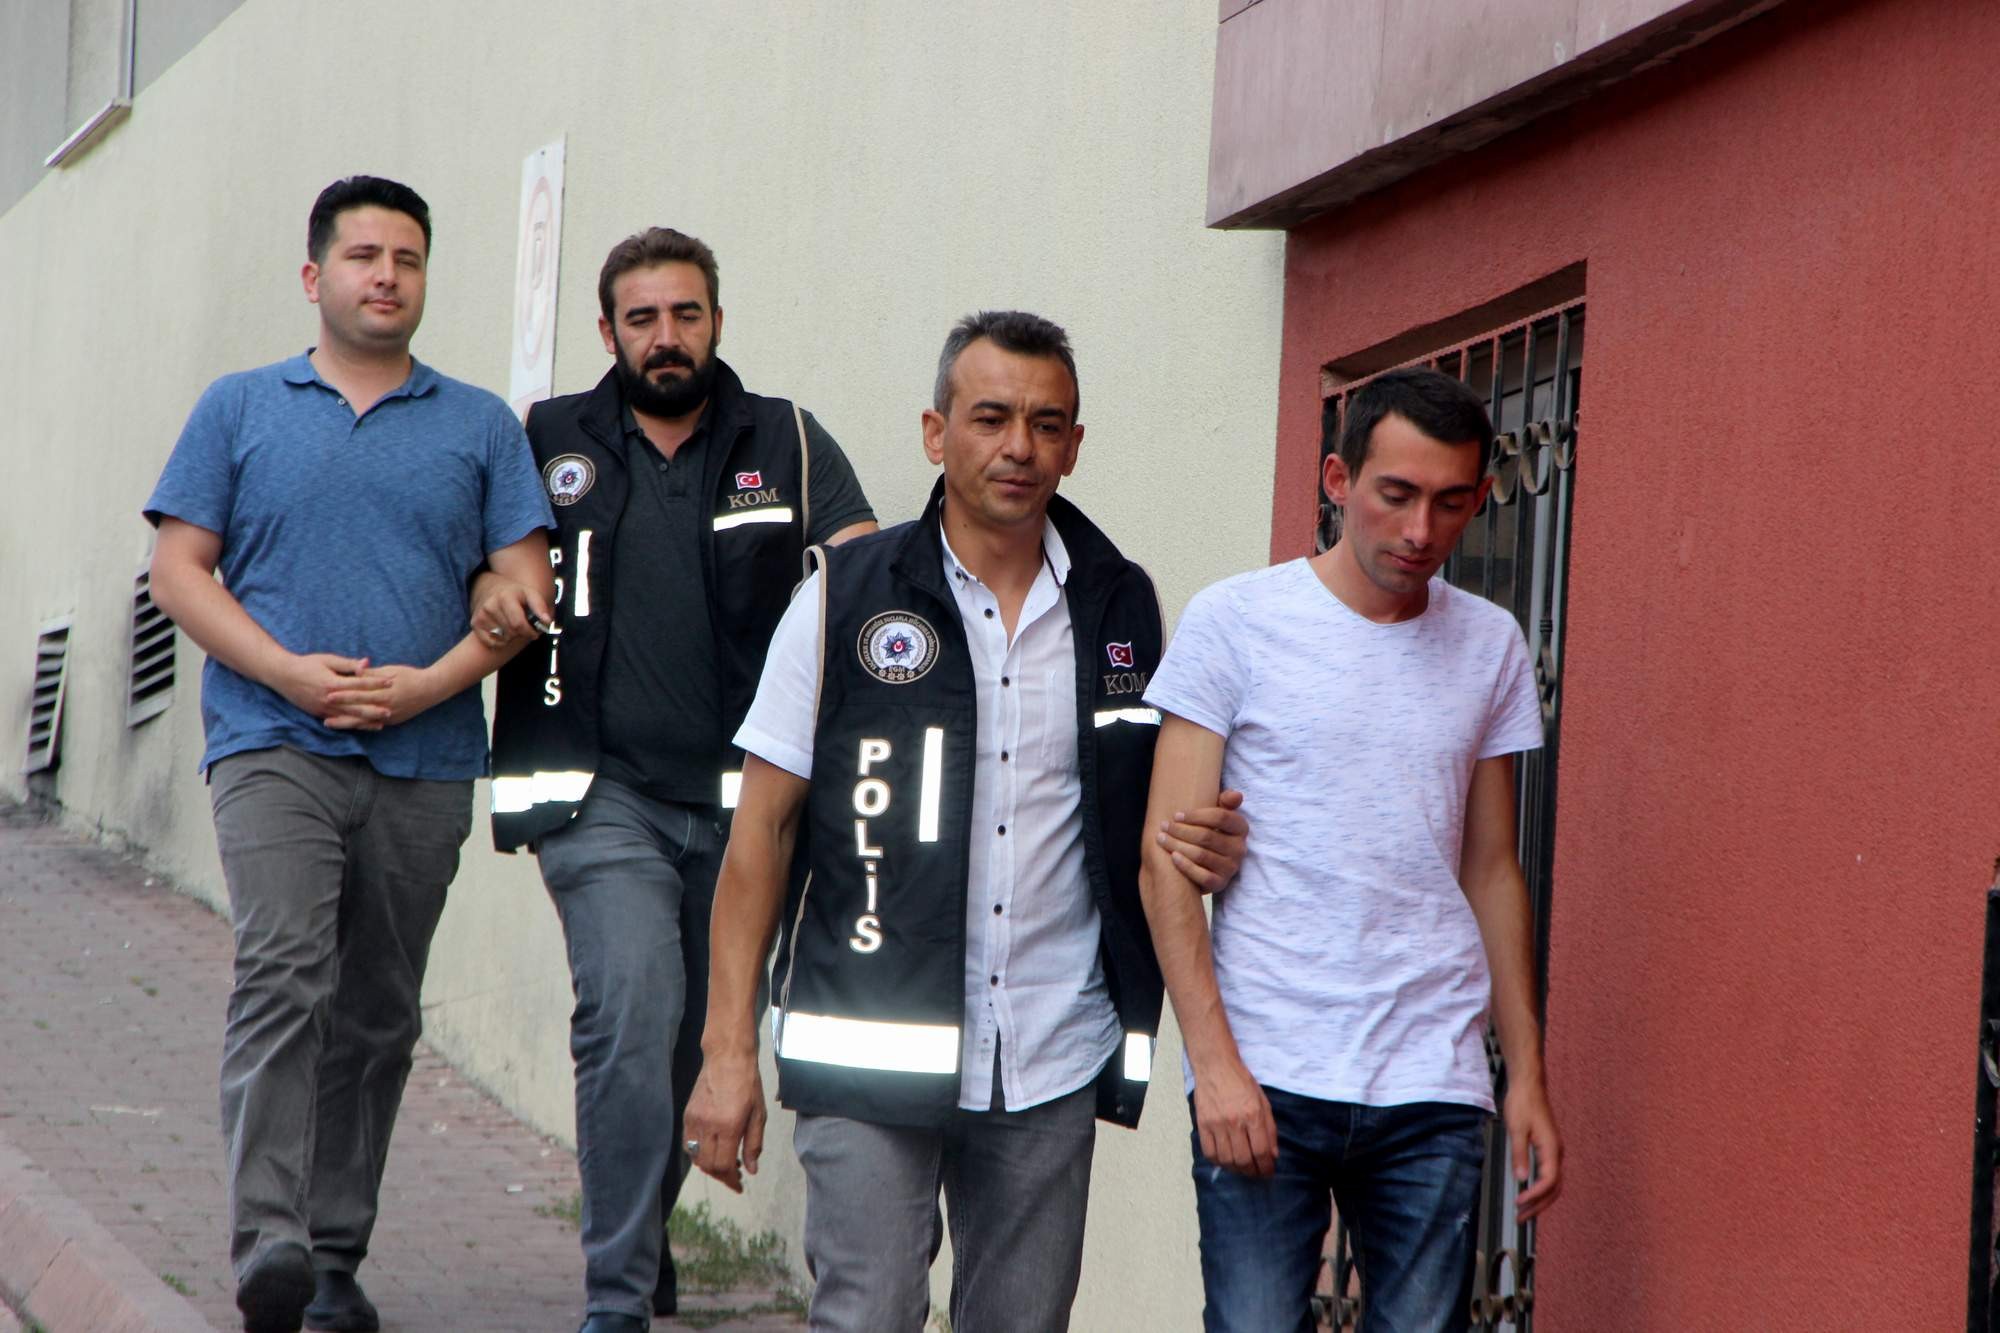 Kayseri’deki FETÖ operasyonunda 3 kişi adliyeye sevk edildi